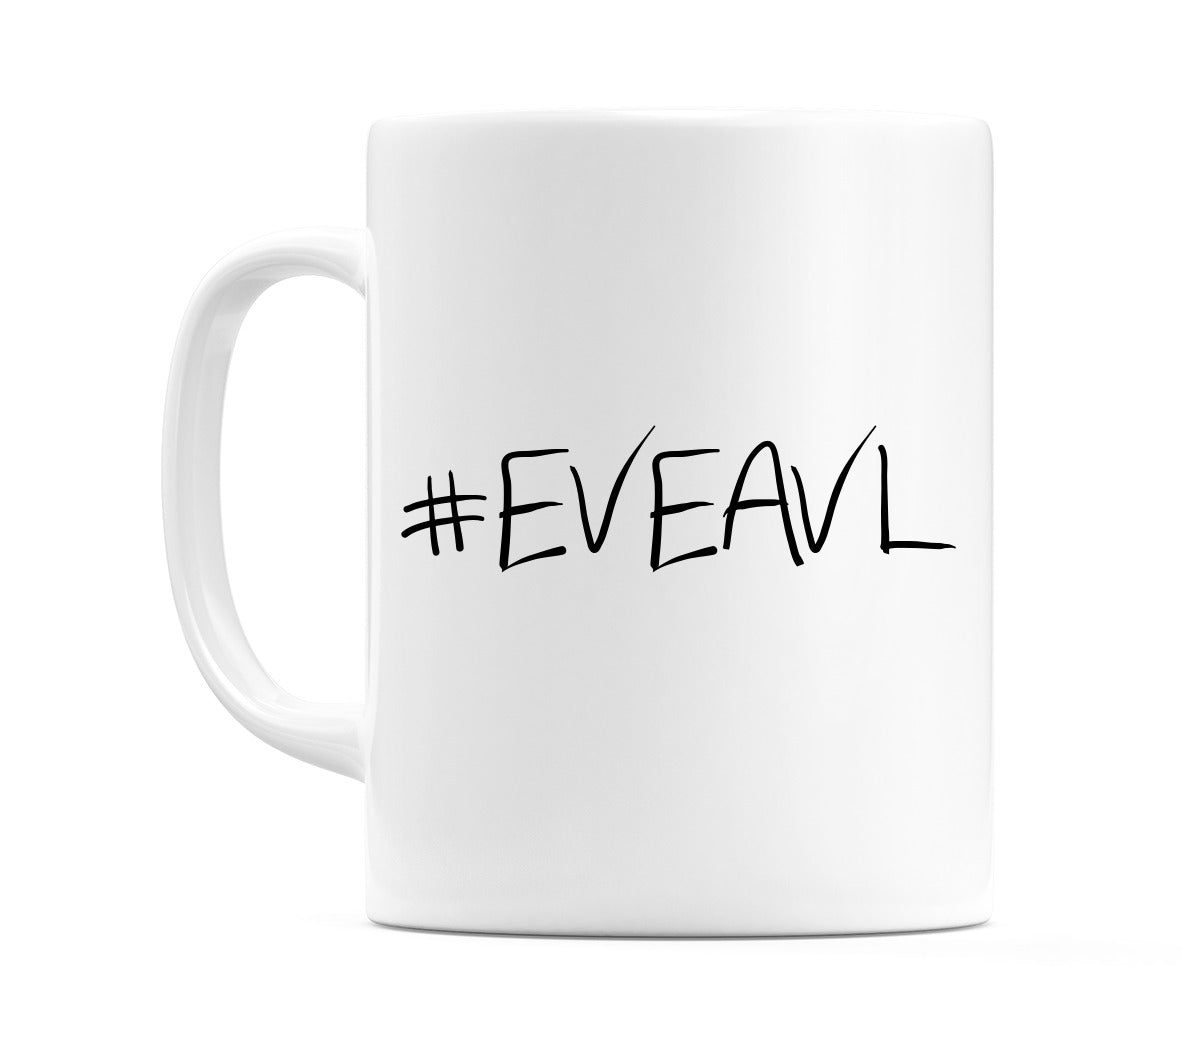 #EVEAVL Mug